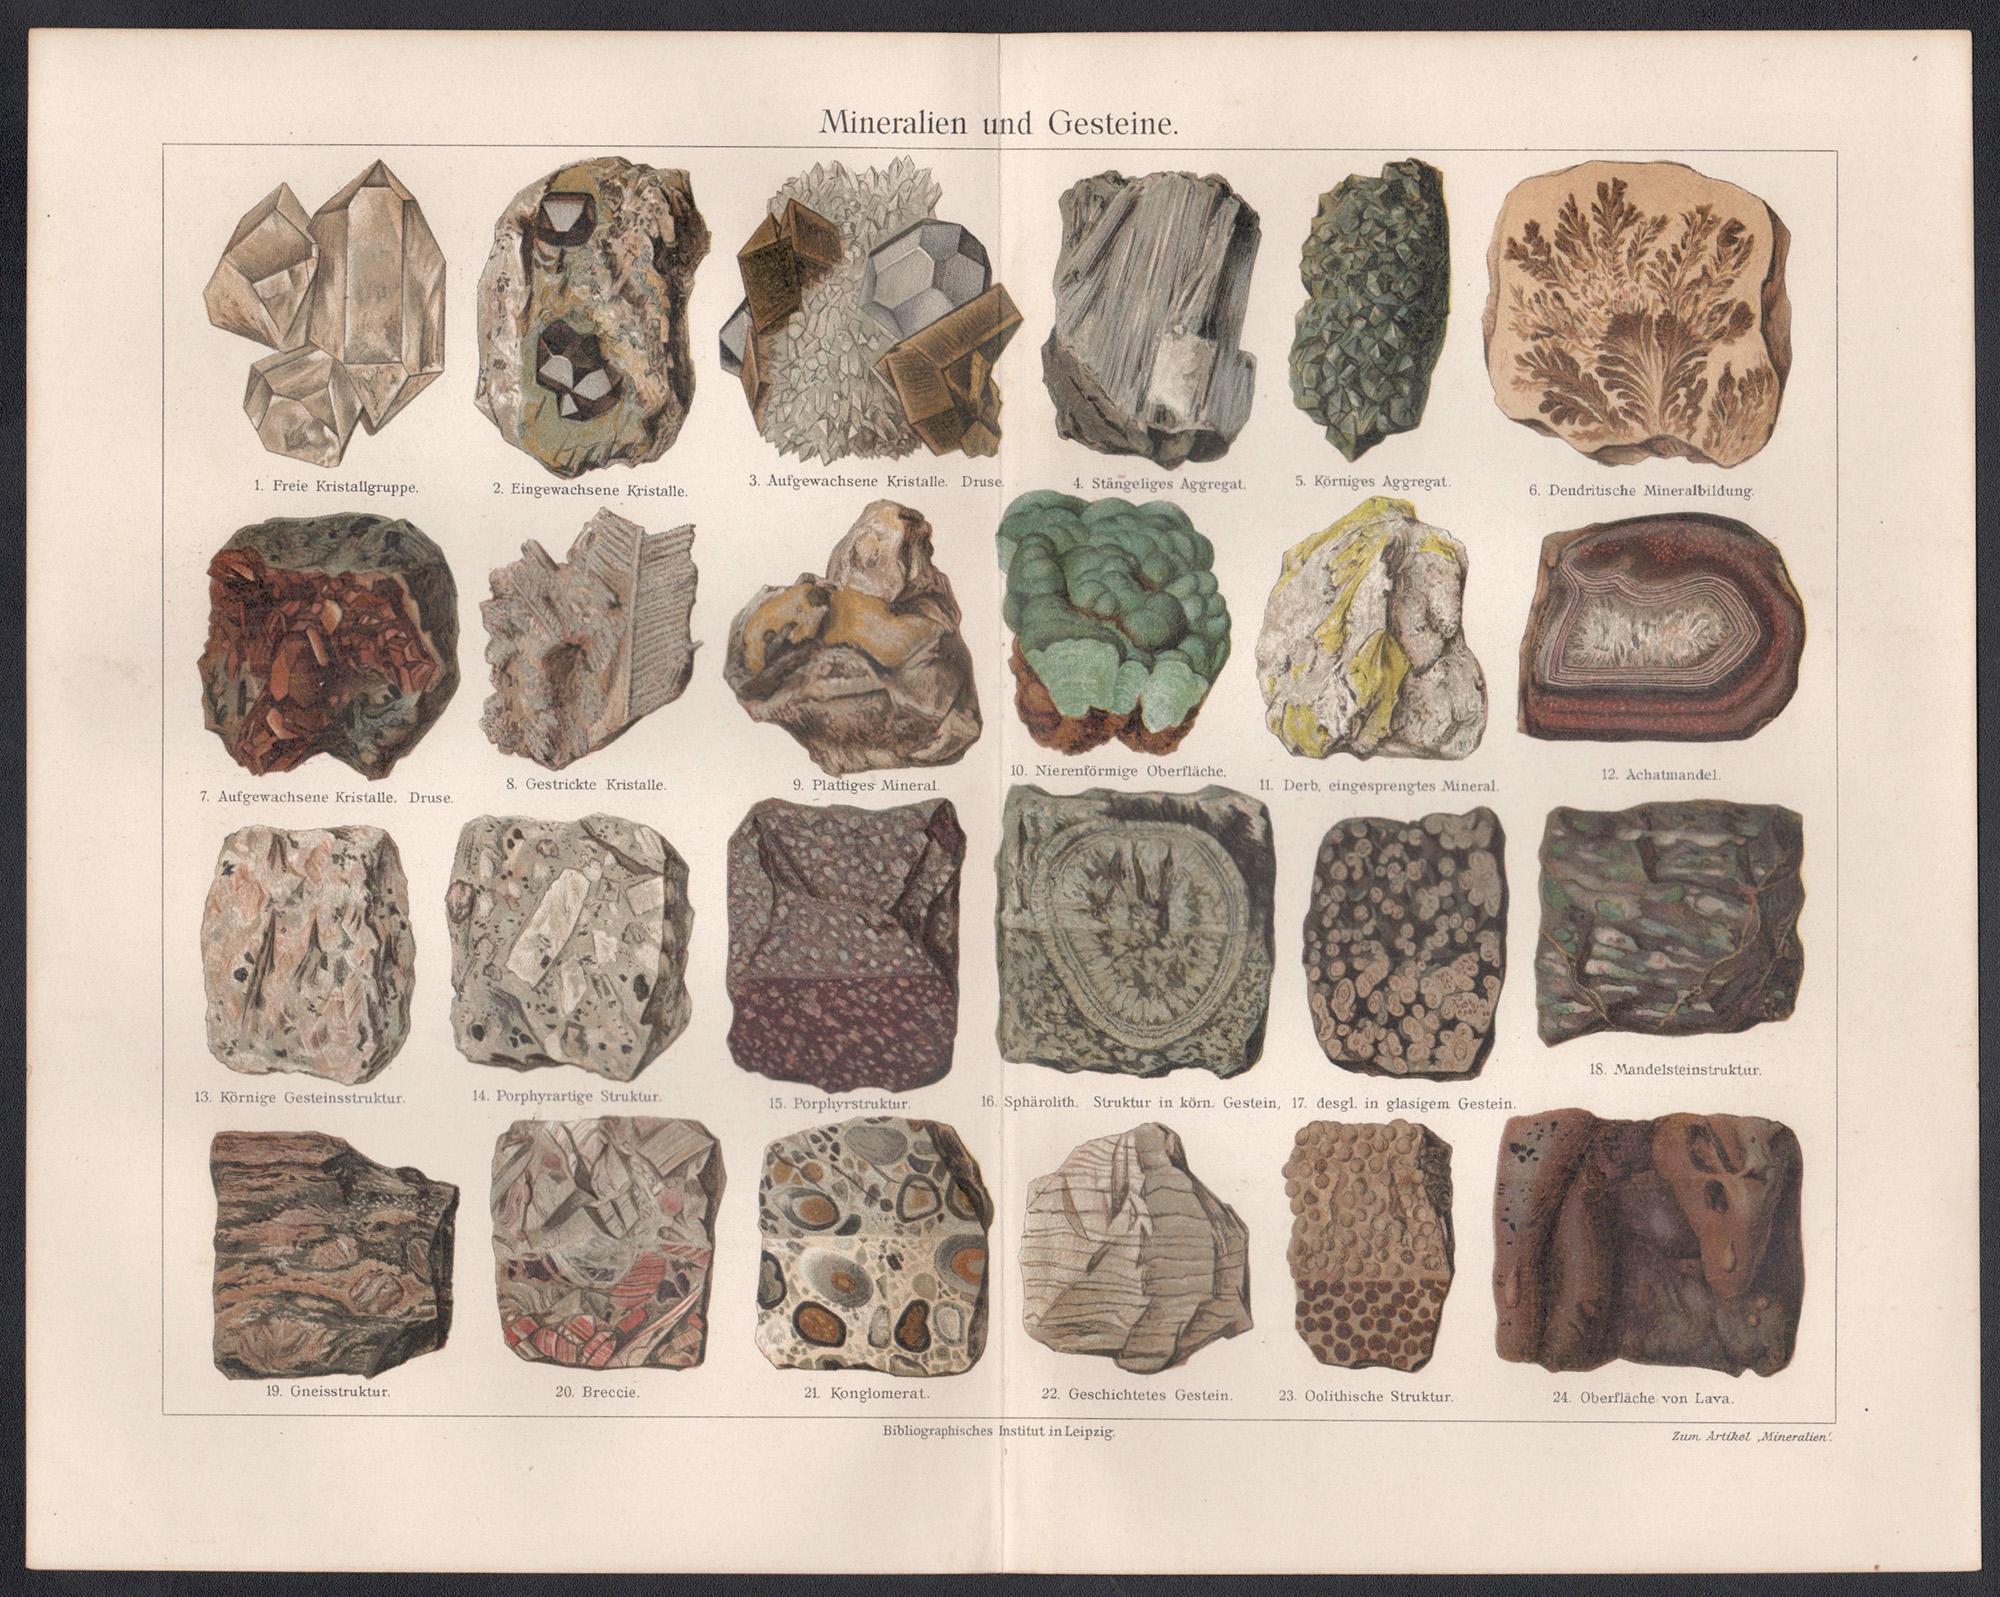 Mineralien und Gesteine (Minerals and Rocks), German antique geology print - Print by Unknown